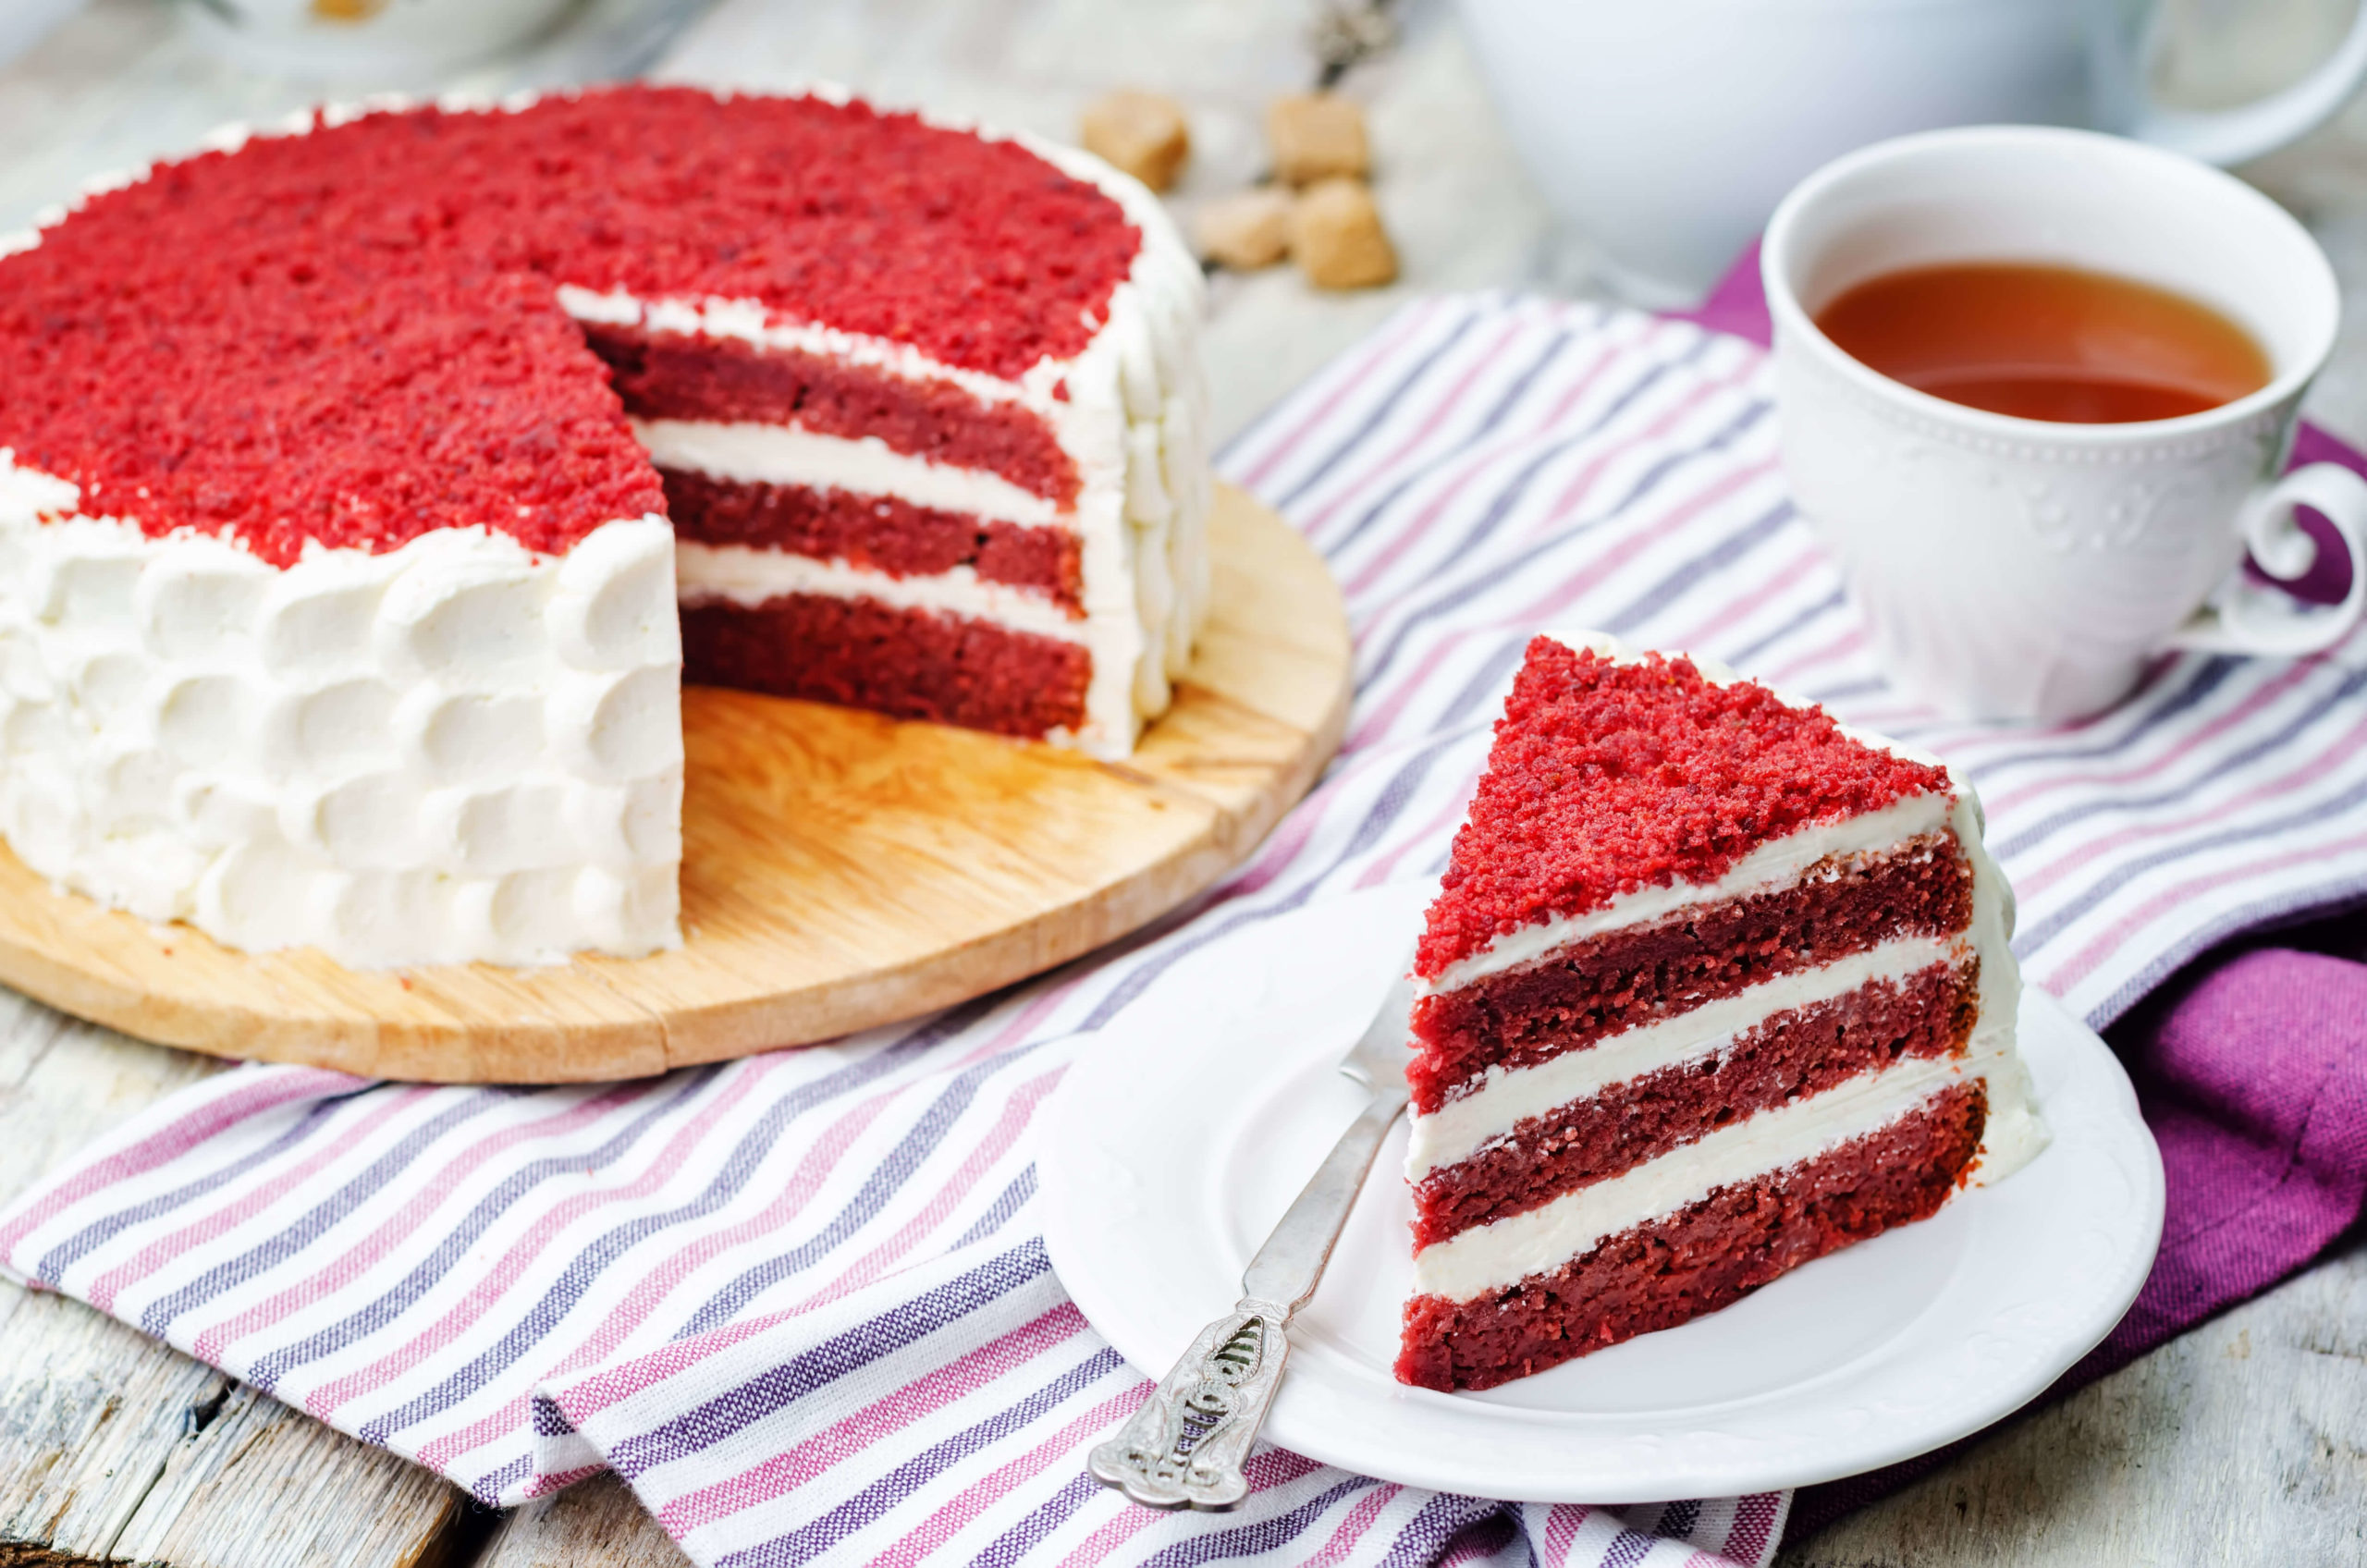 English cake. Торта "красный бархат" (Red Velvet).. Торт красный бархат с конфи. Торт «ред вельвет». Торт ред вельвет красный.